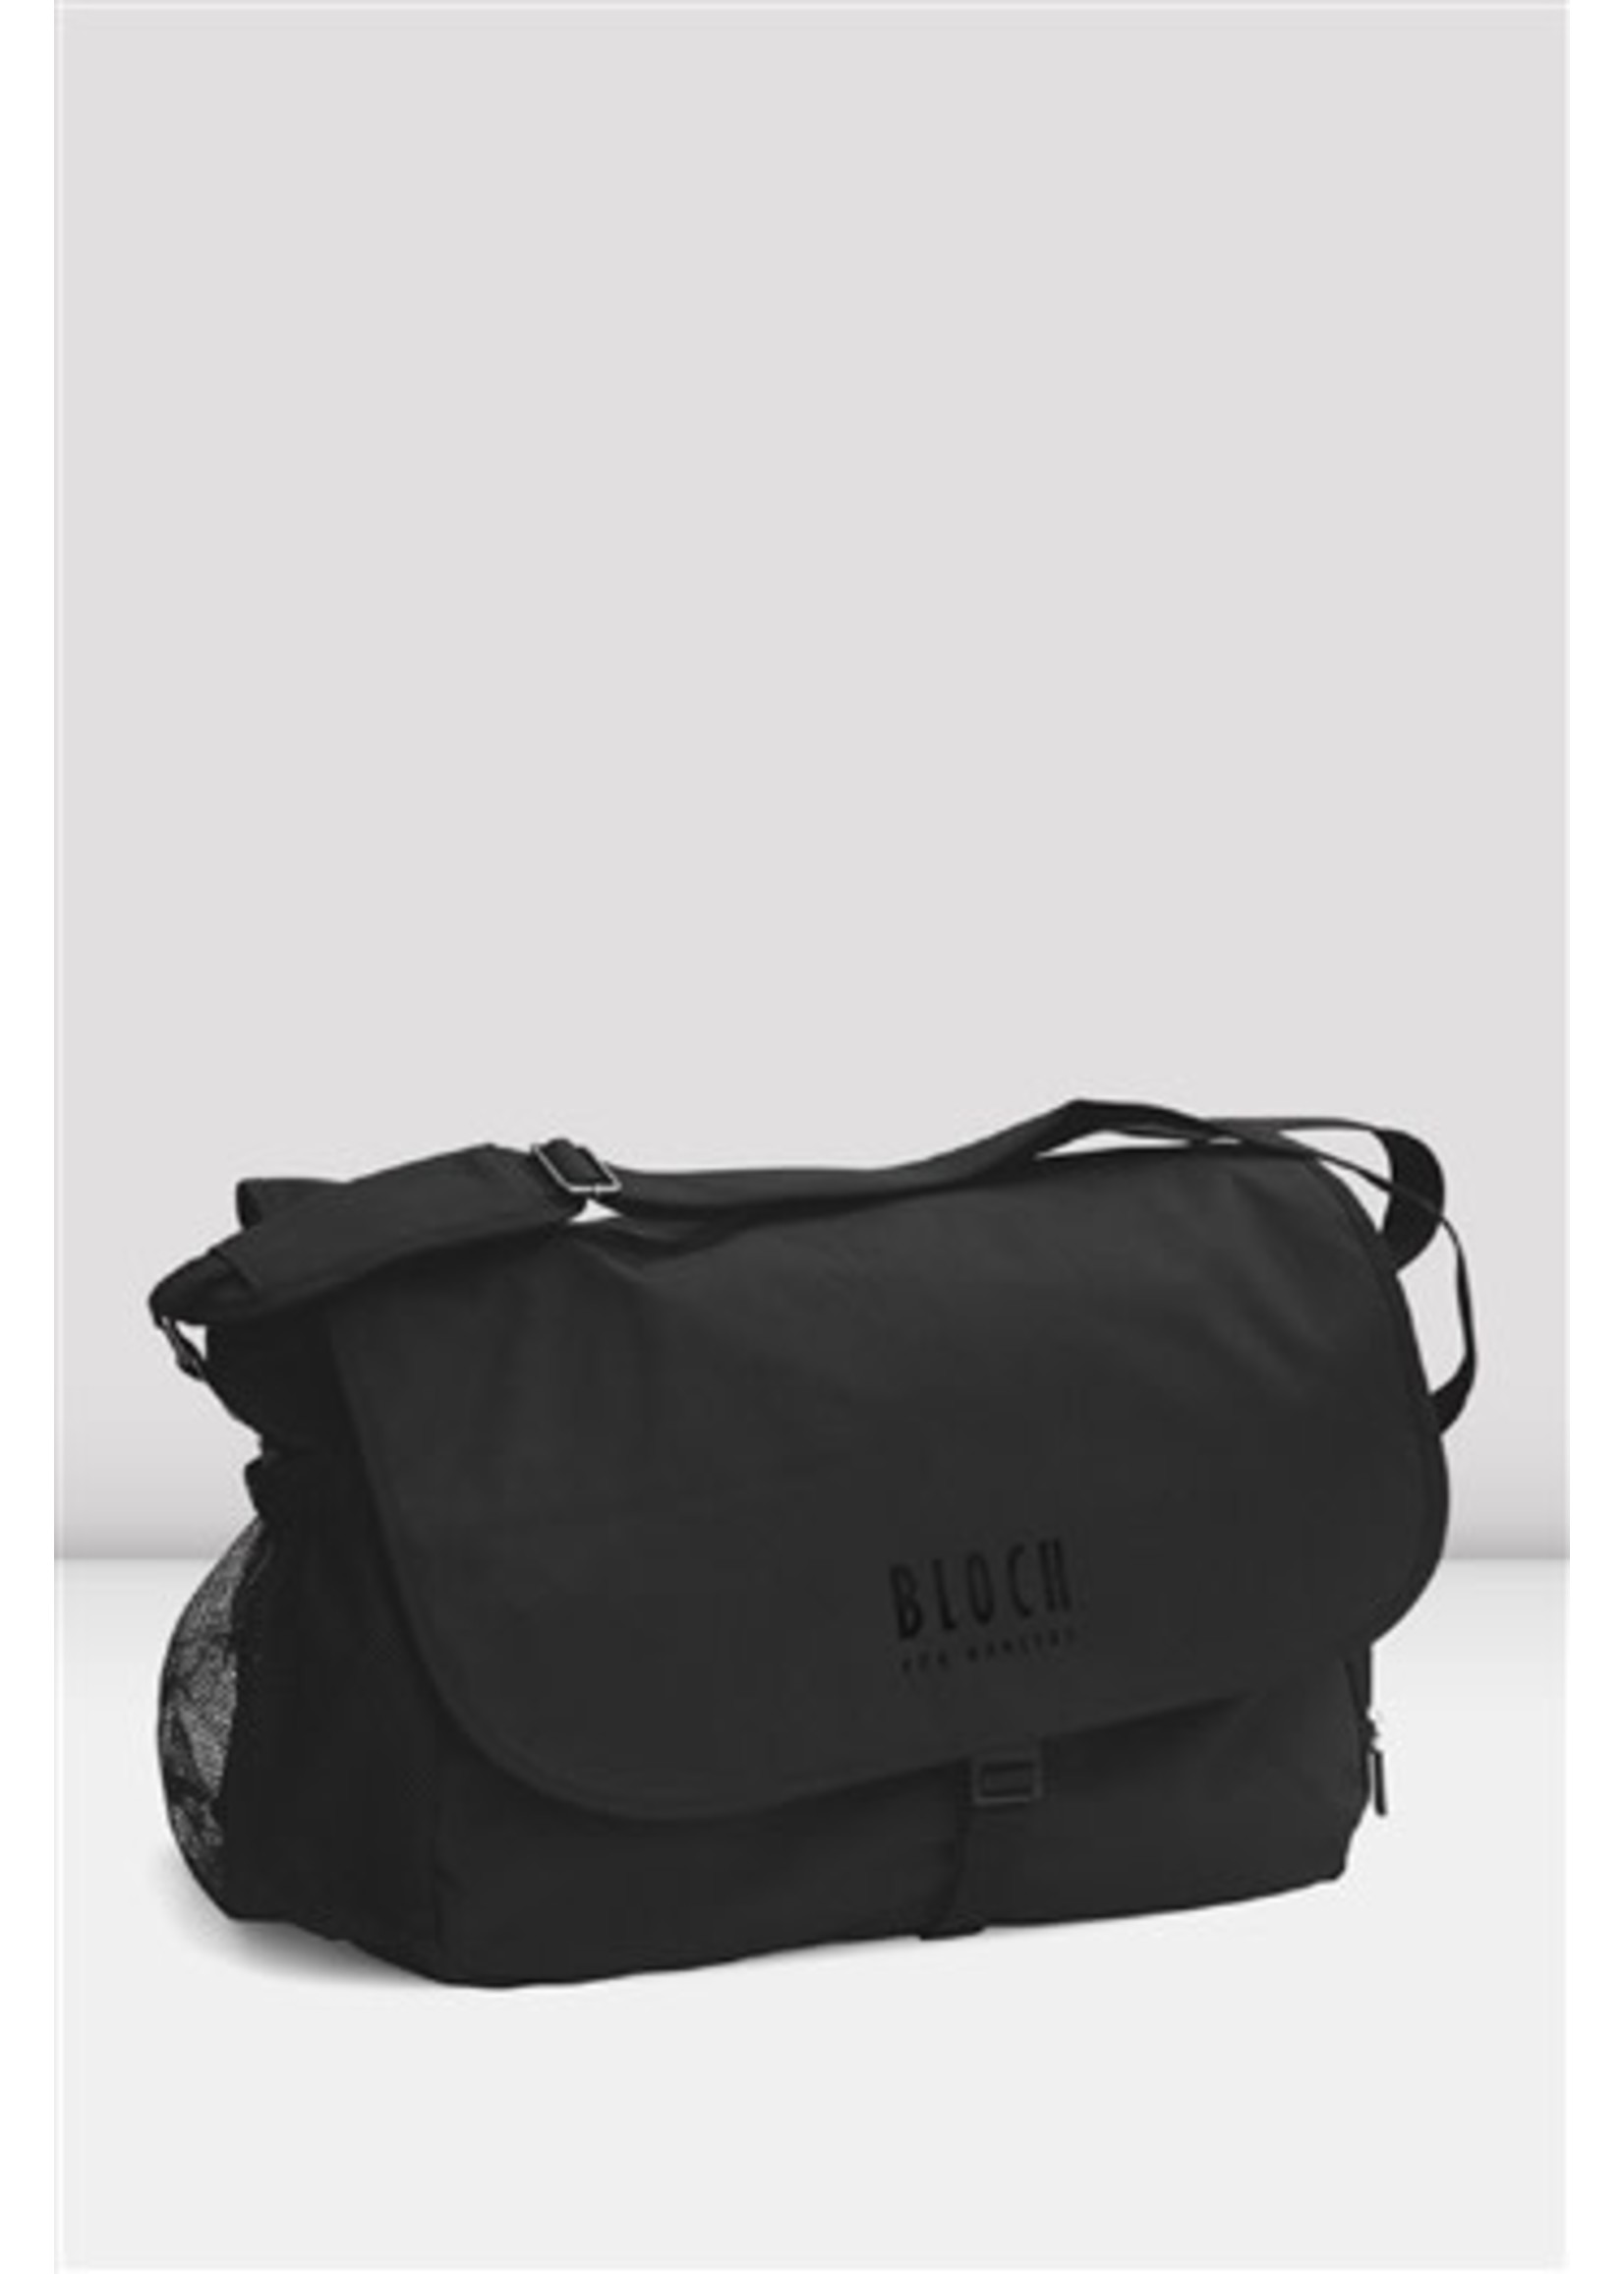 Bloch Dance Messenger Bag